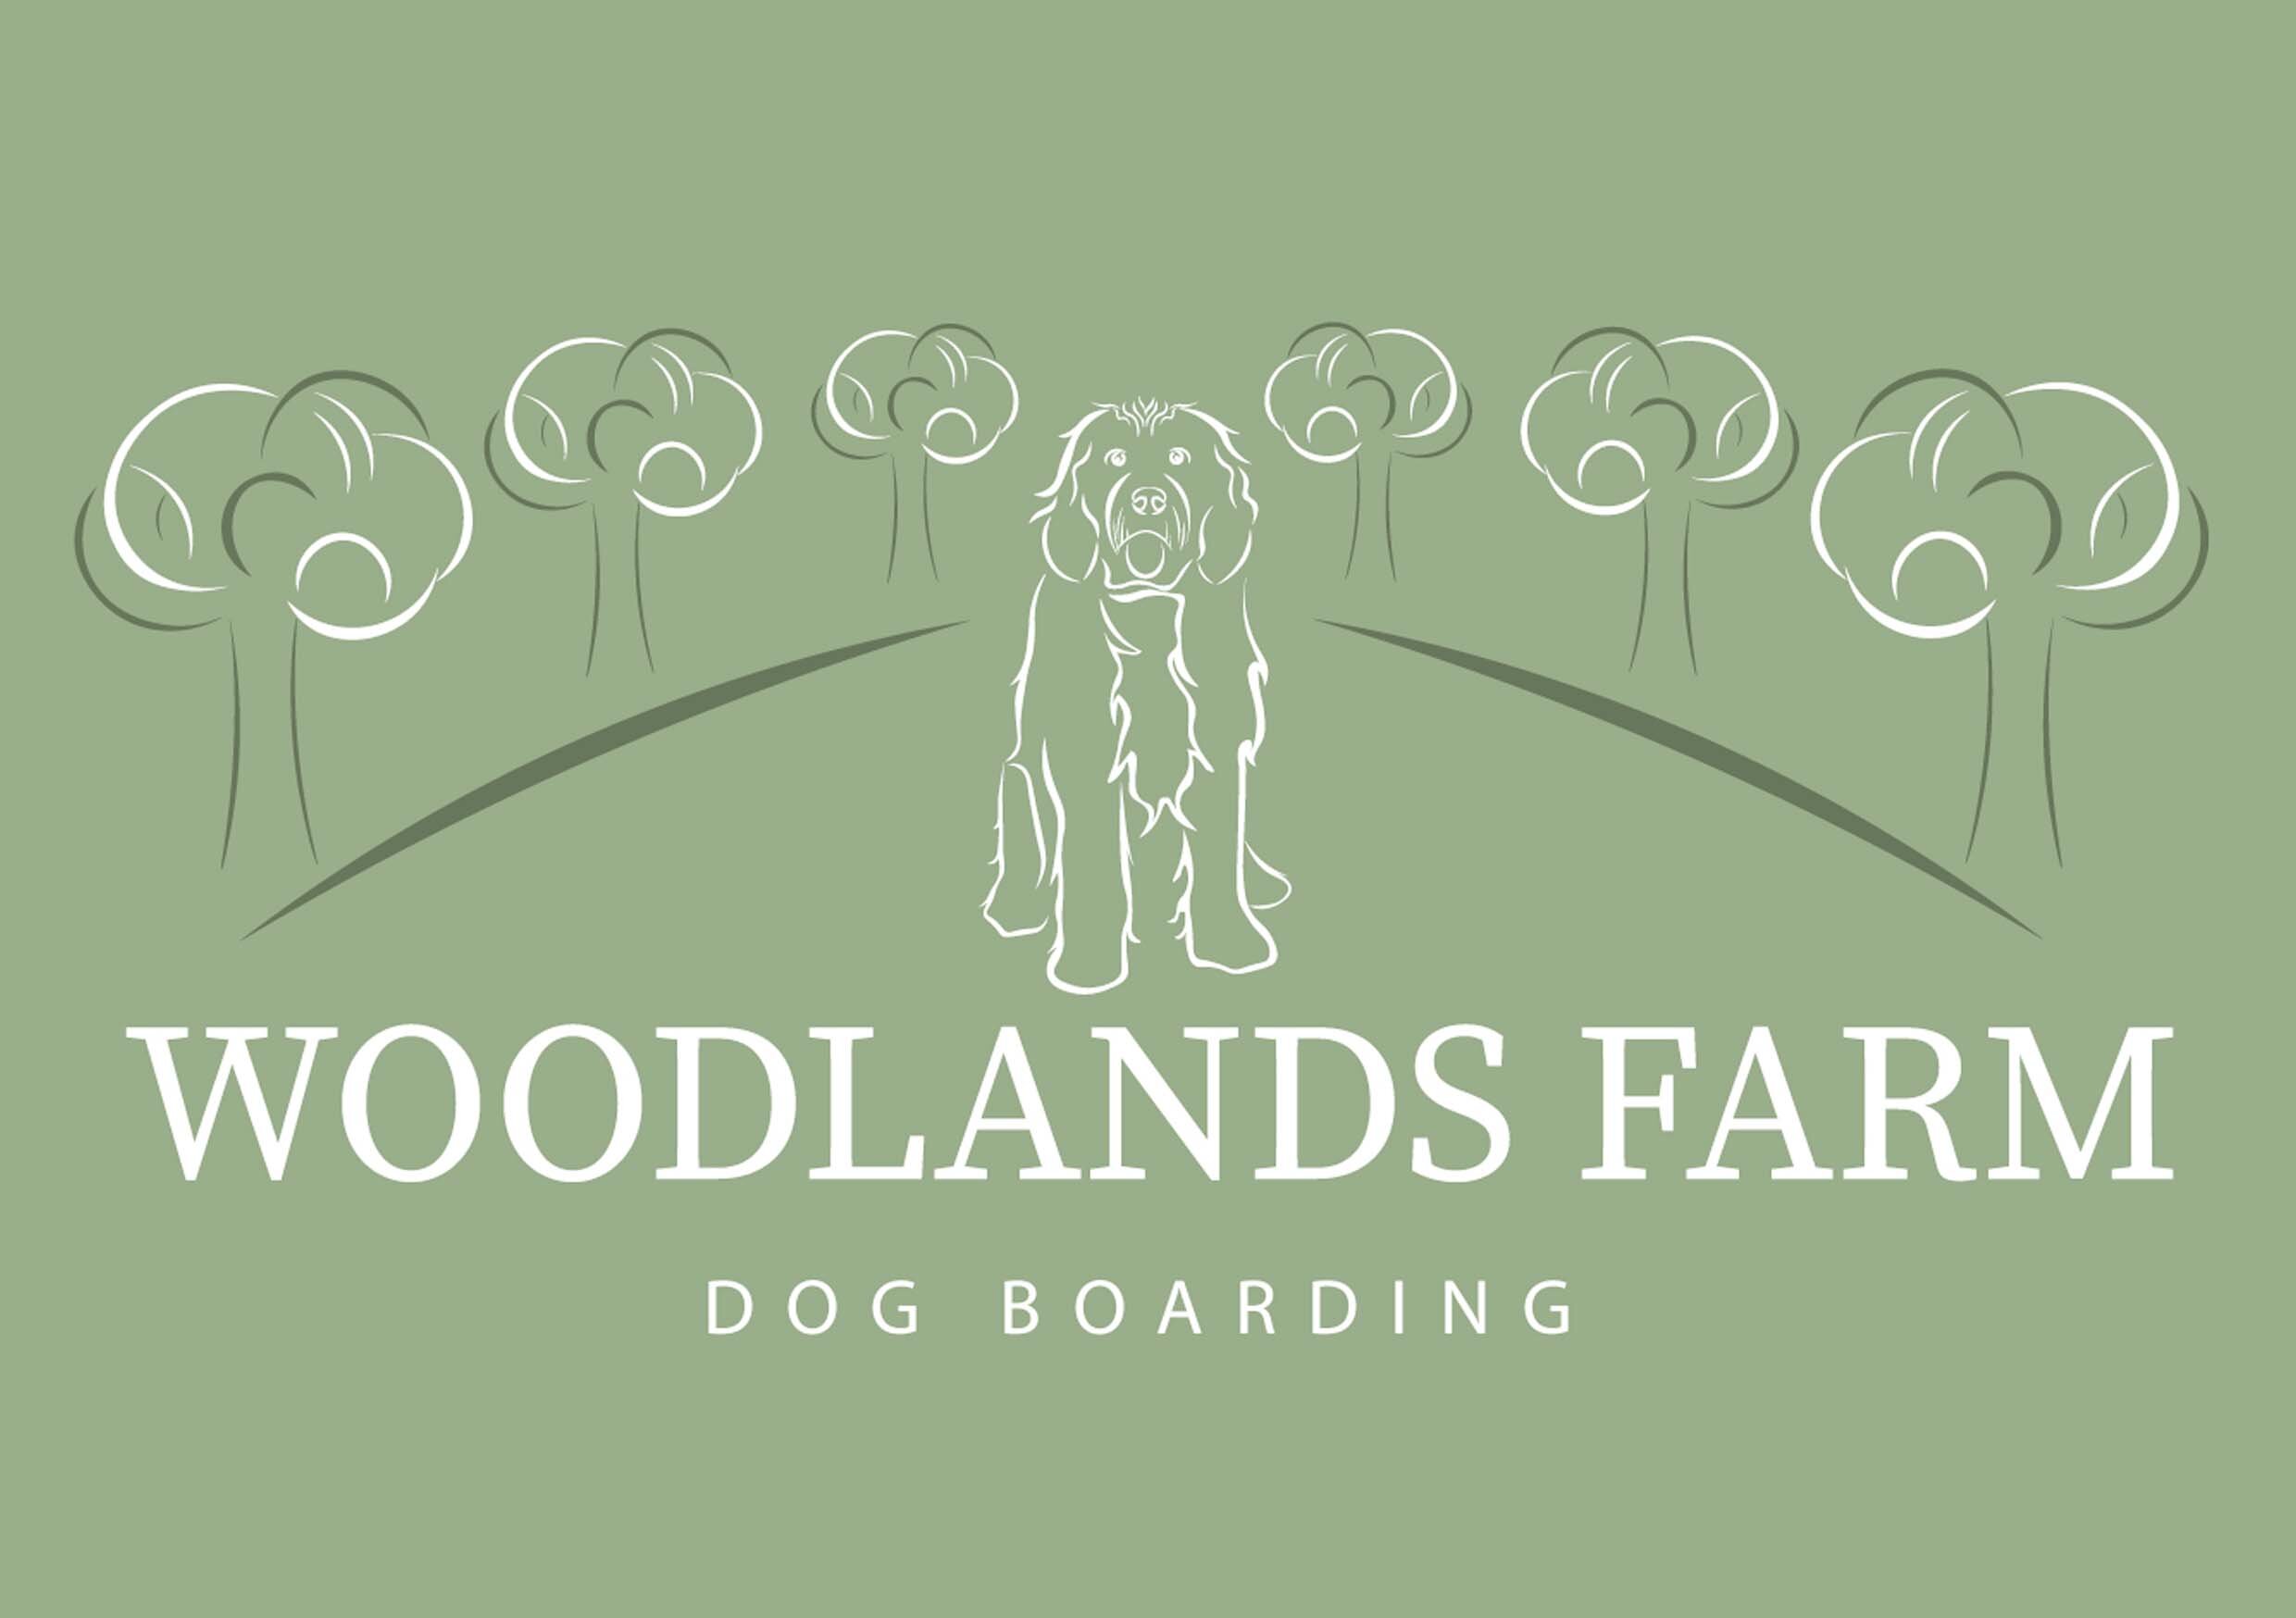 Woodlands Farm Dog Boarding